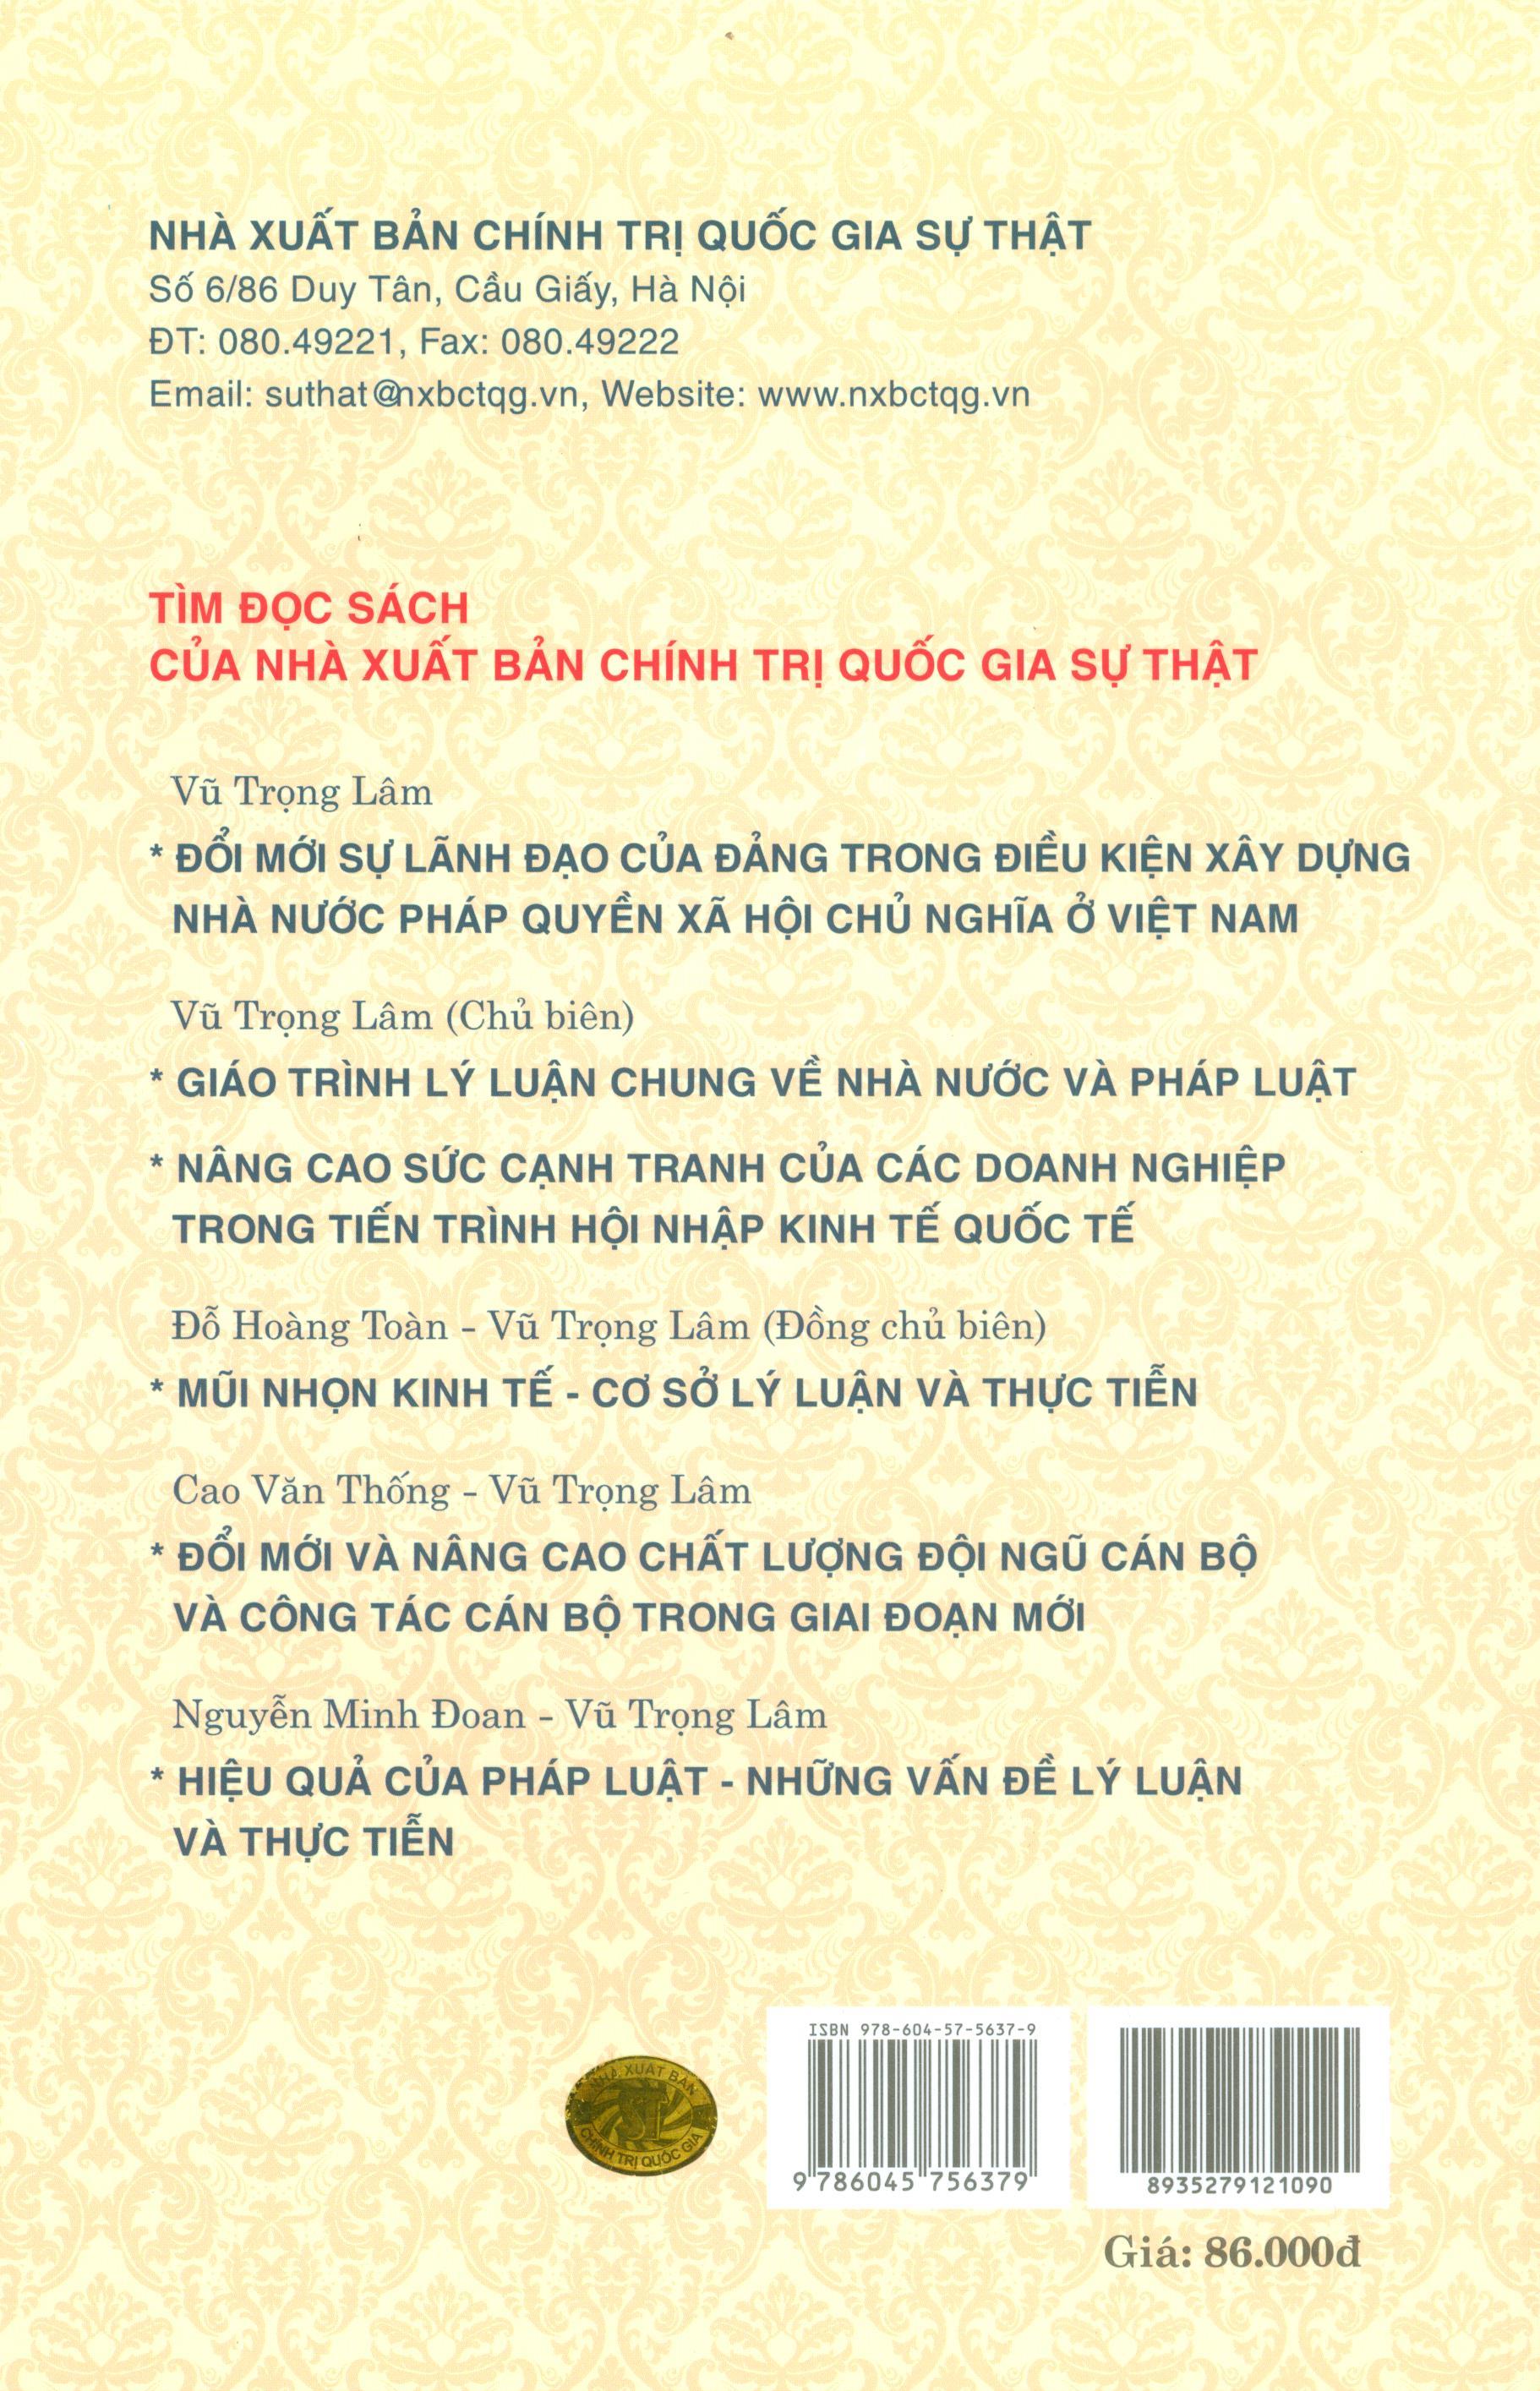 Giáo Trình Luật Hiến Pháp Việt Nam